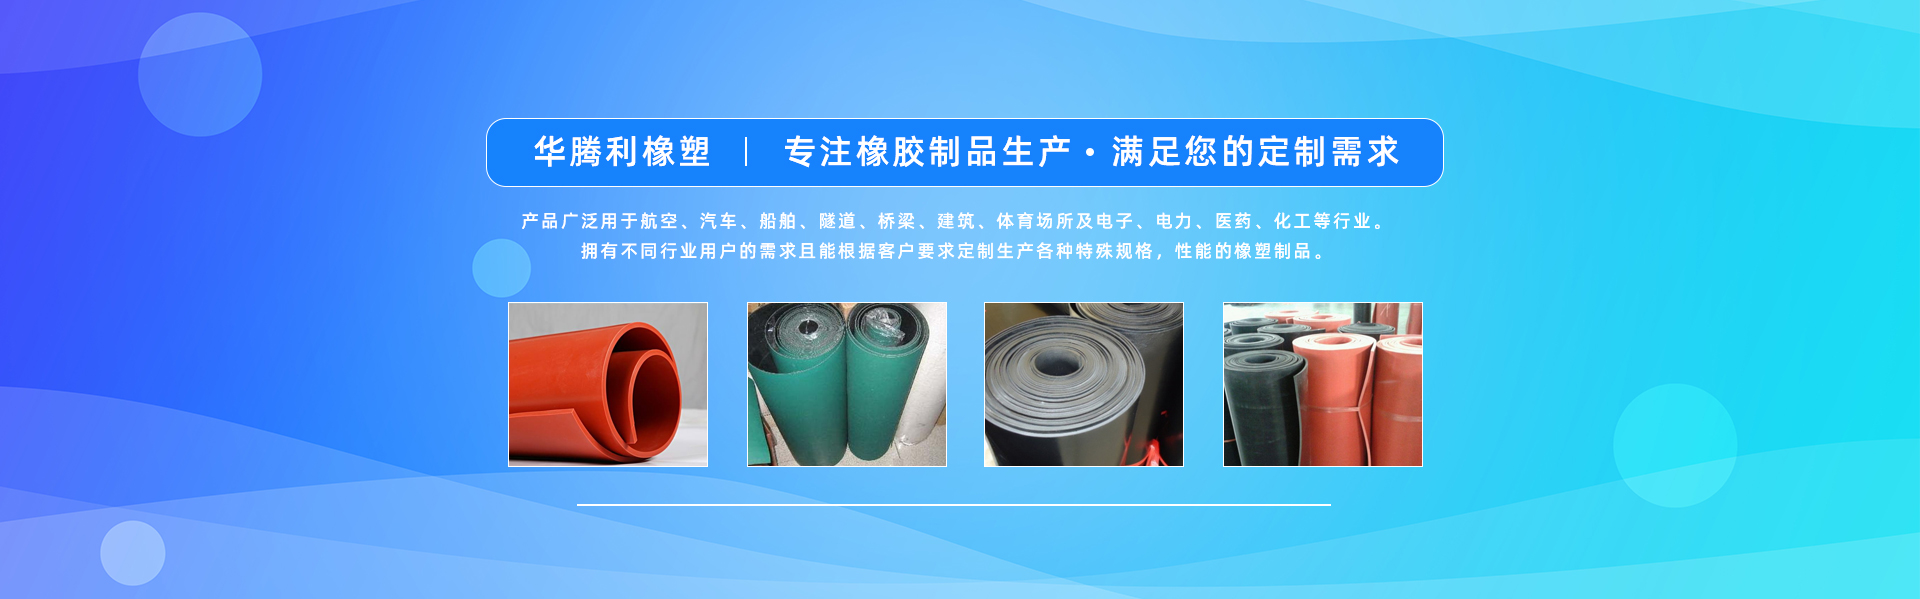 -南京華騰利橡塑科技有限公司